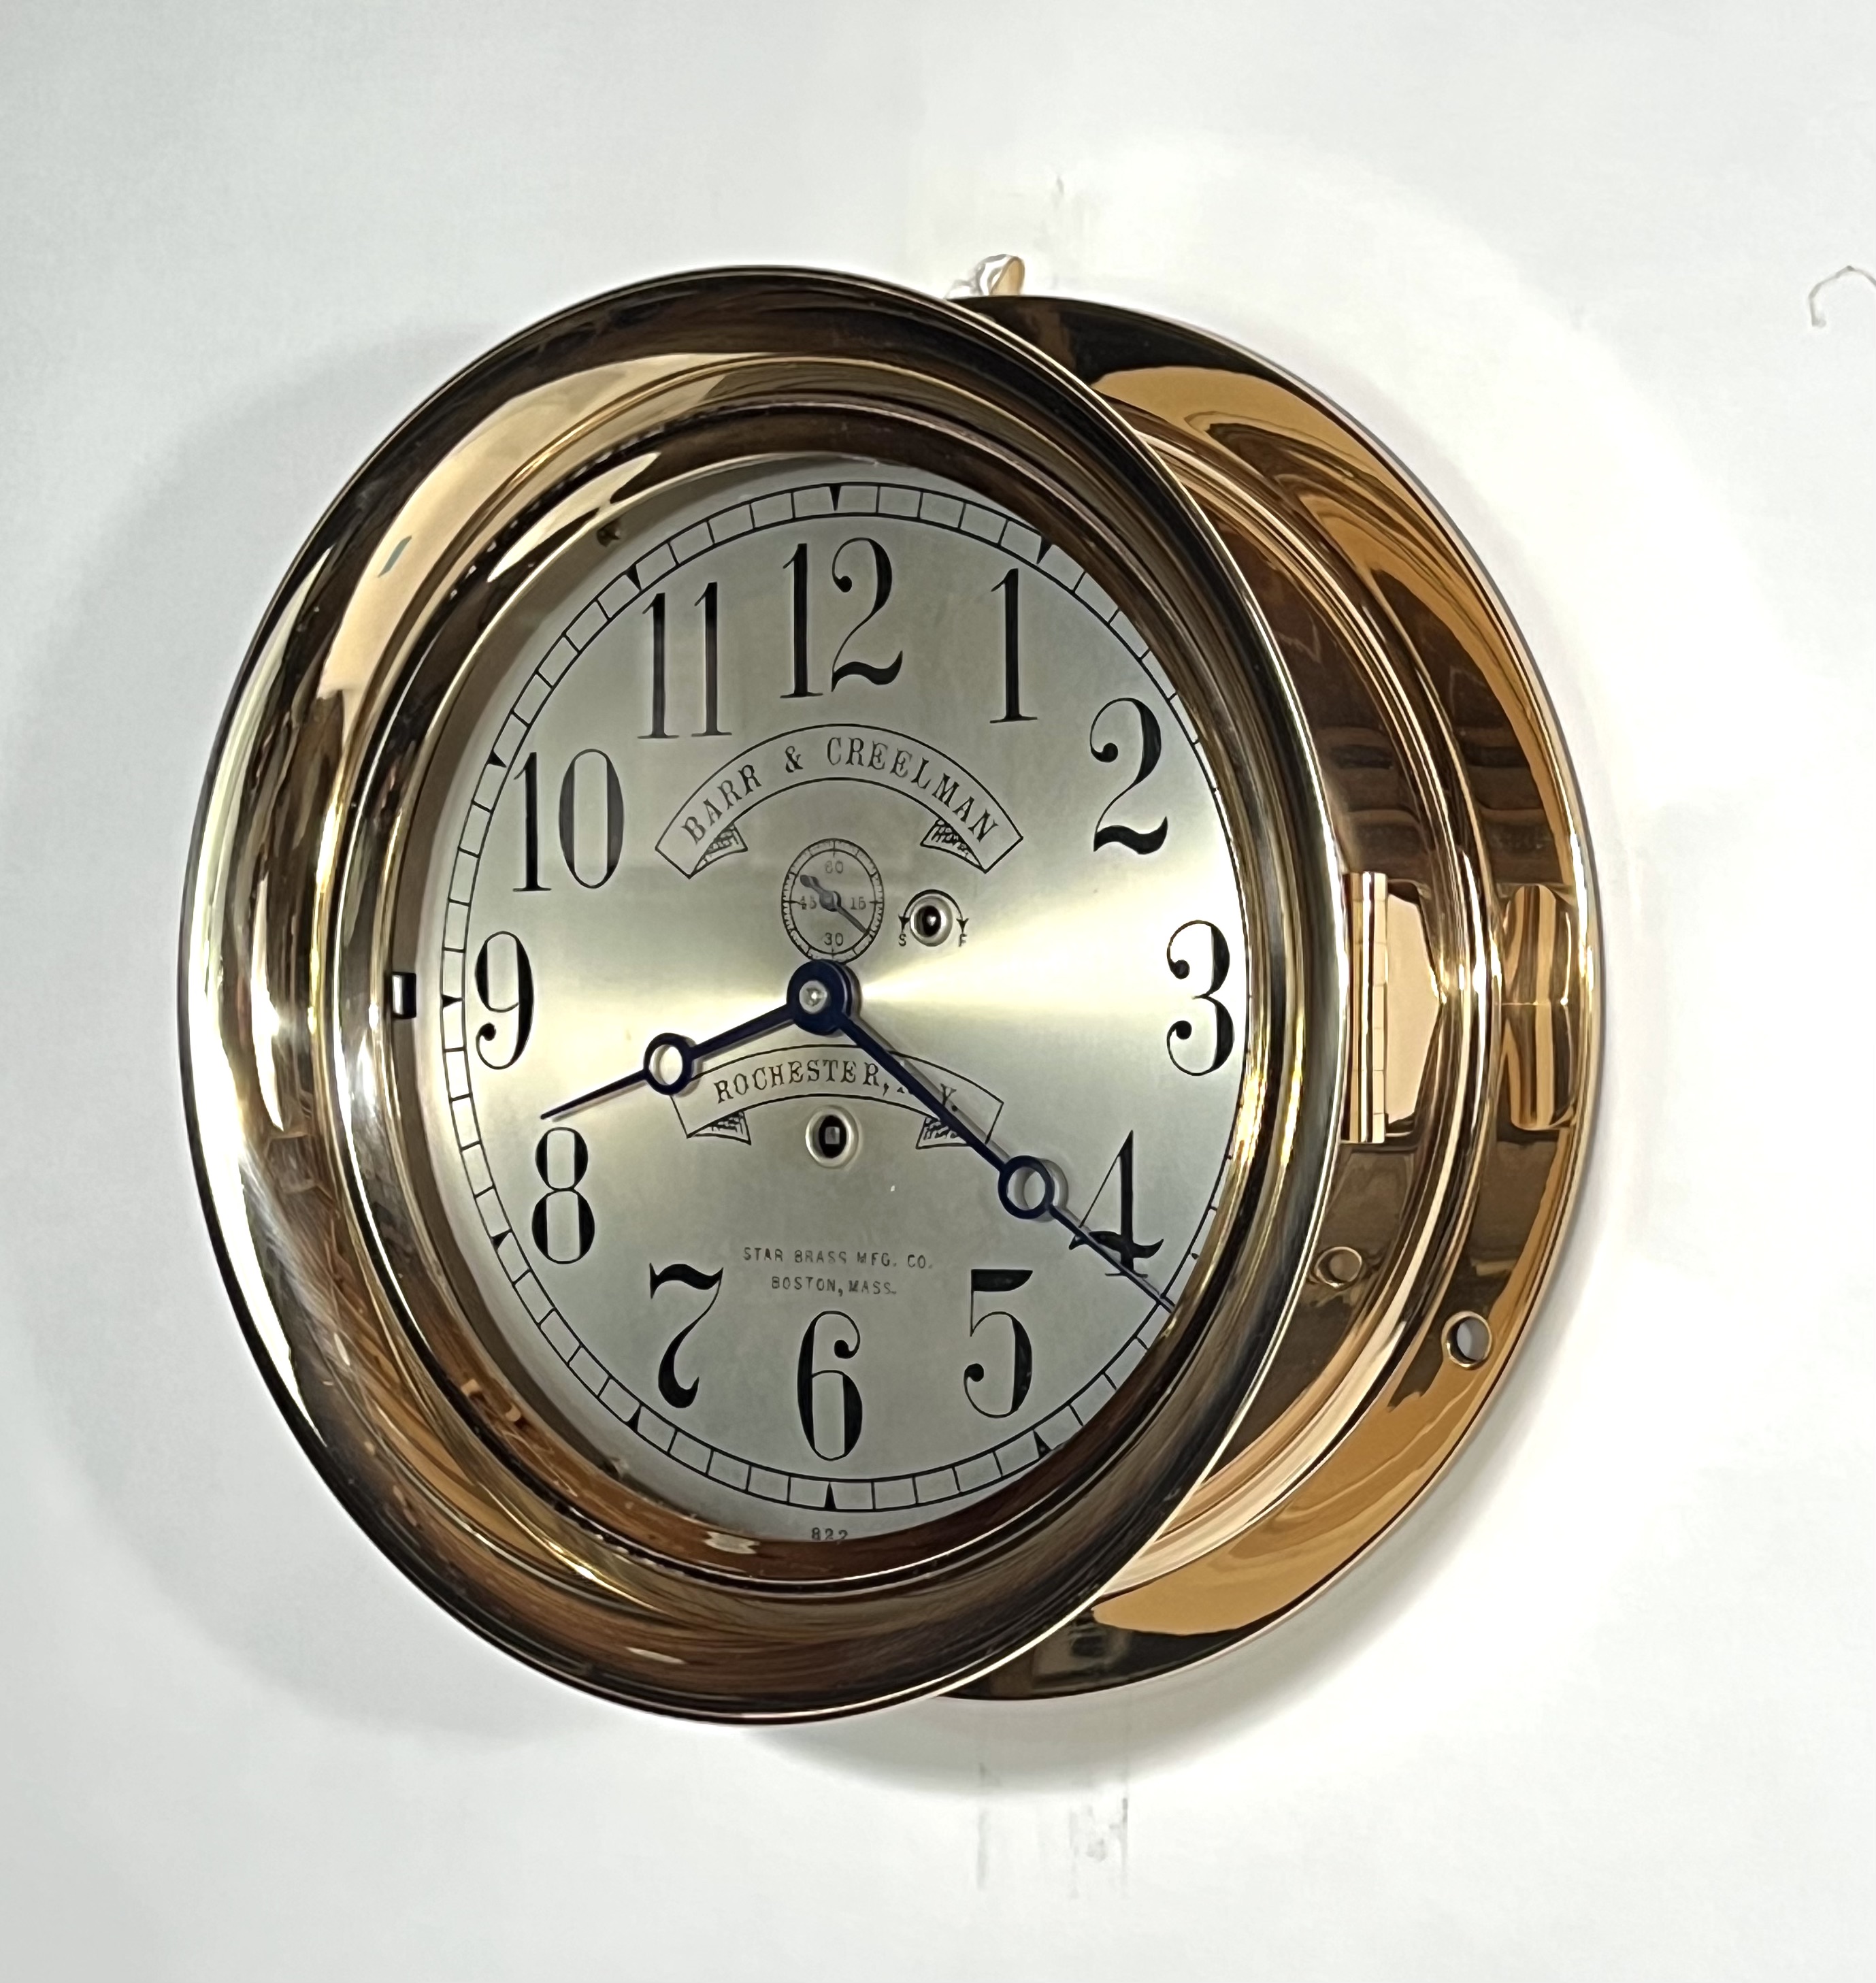 Early Waltham 8 1/2 inch Marine Clock for Barr & Creelman